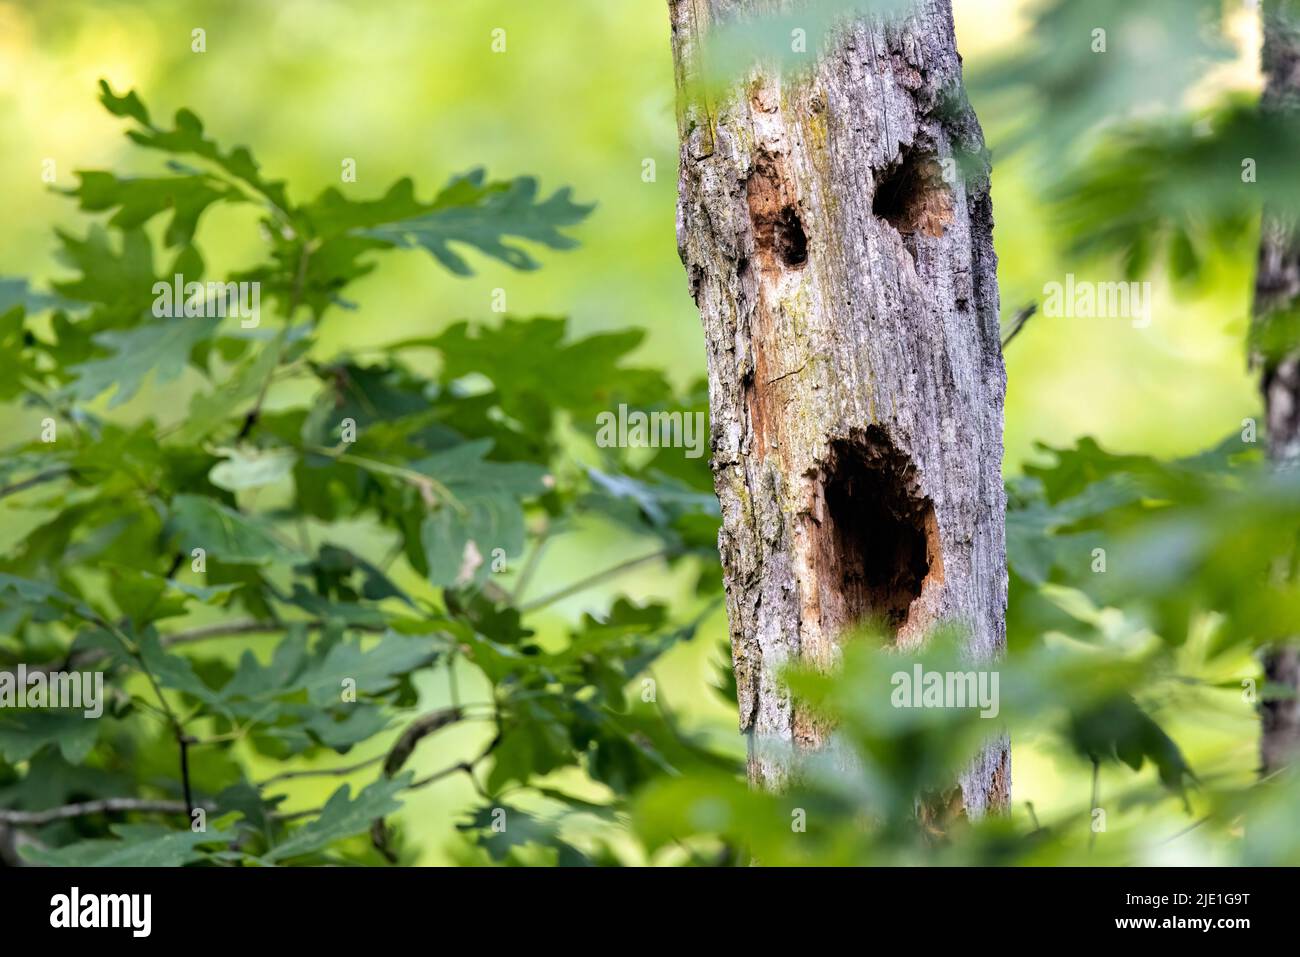 Cara de miedo en tronco de árbol - Brevard, Carolina del Norte, Estados Unidos Foto de stock